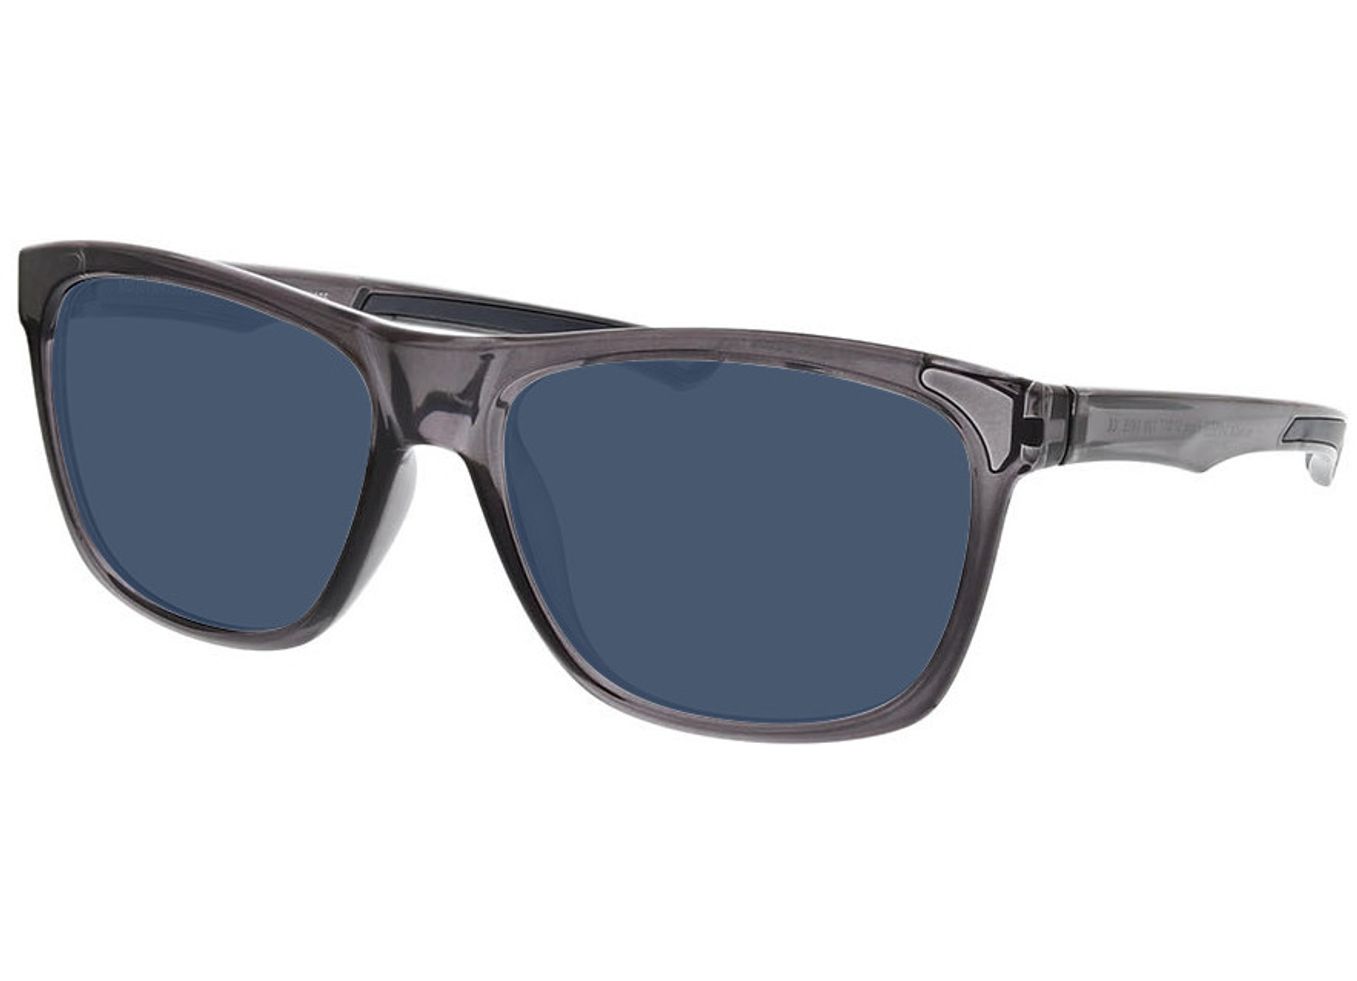 Flash - grau Sonnenbrille ohne Sehstärke, Vollrand, Rechteckig von Active by Brille24